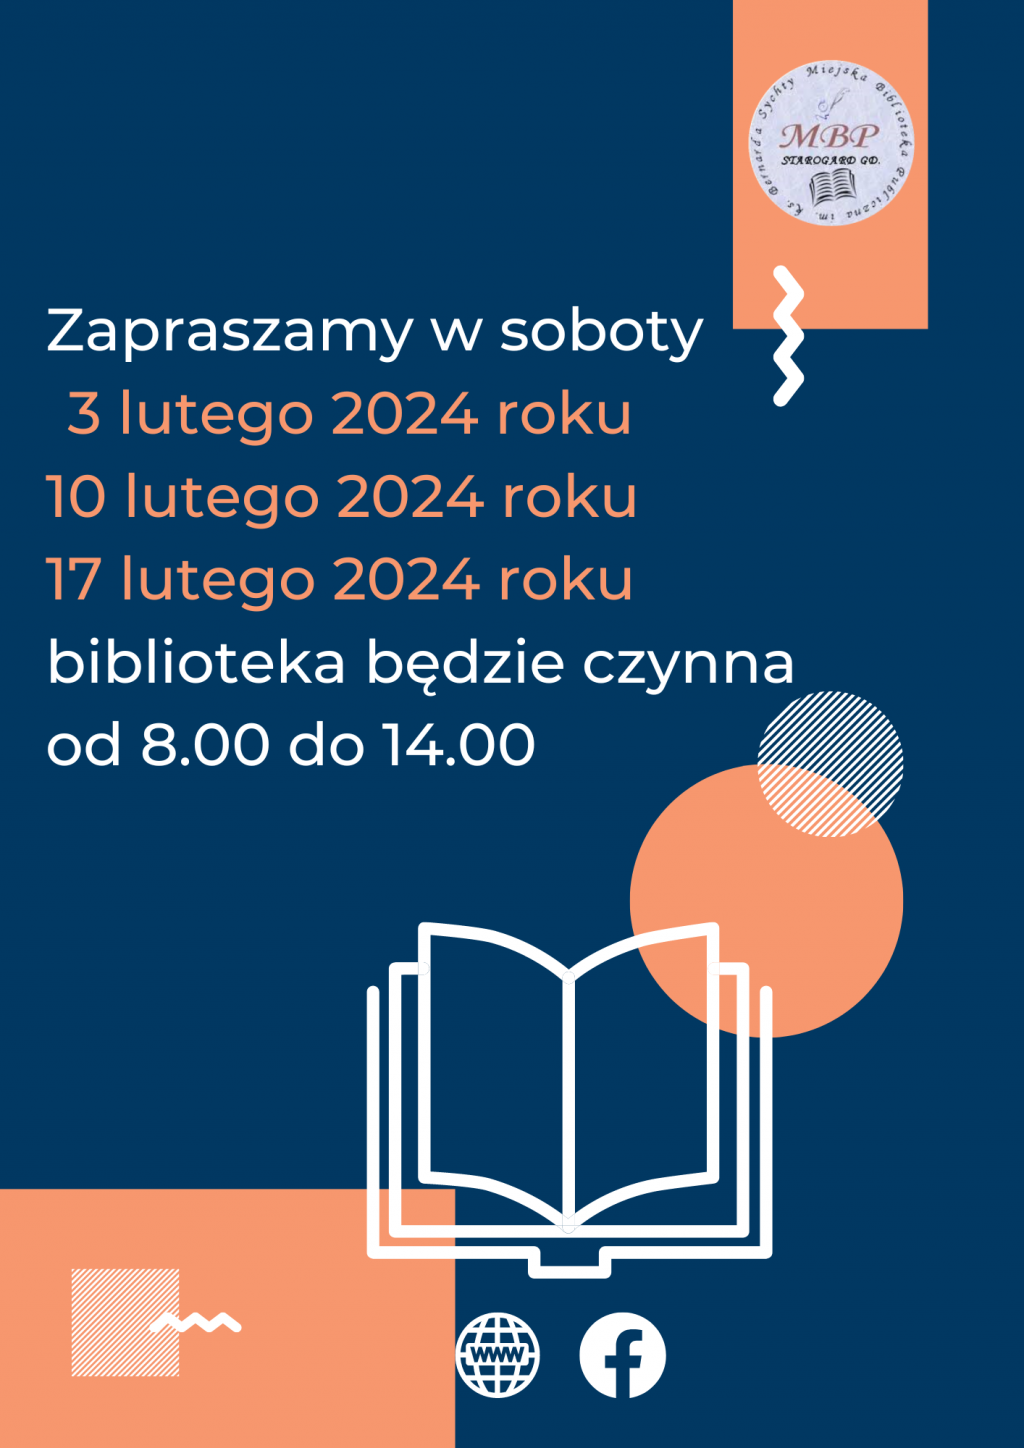 Plakat informujący o pracujących sobotach: soboty 3 lutego 2024, 10 lutego 2024 i 17 lutego 2024 roku, biblioteka będzie czynna od 8.00 do 14.00. Miejska Biblioteka Publiczna w Starogardzie Gdańskim.